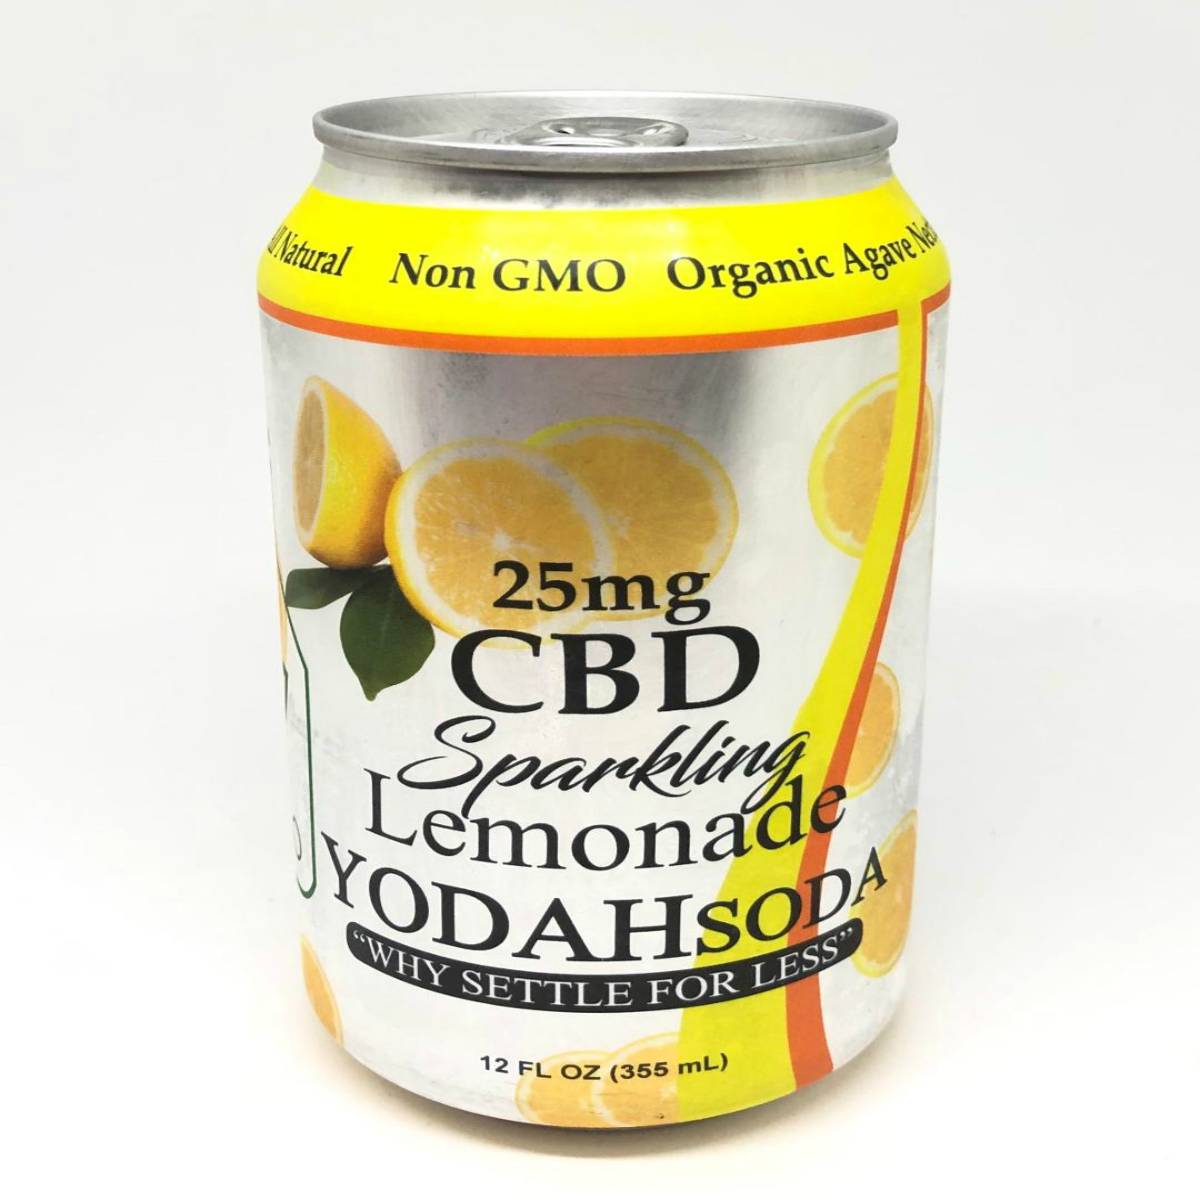 YODAHsoda CBD Lemonade